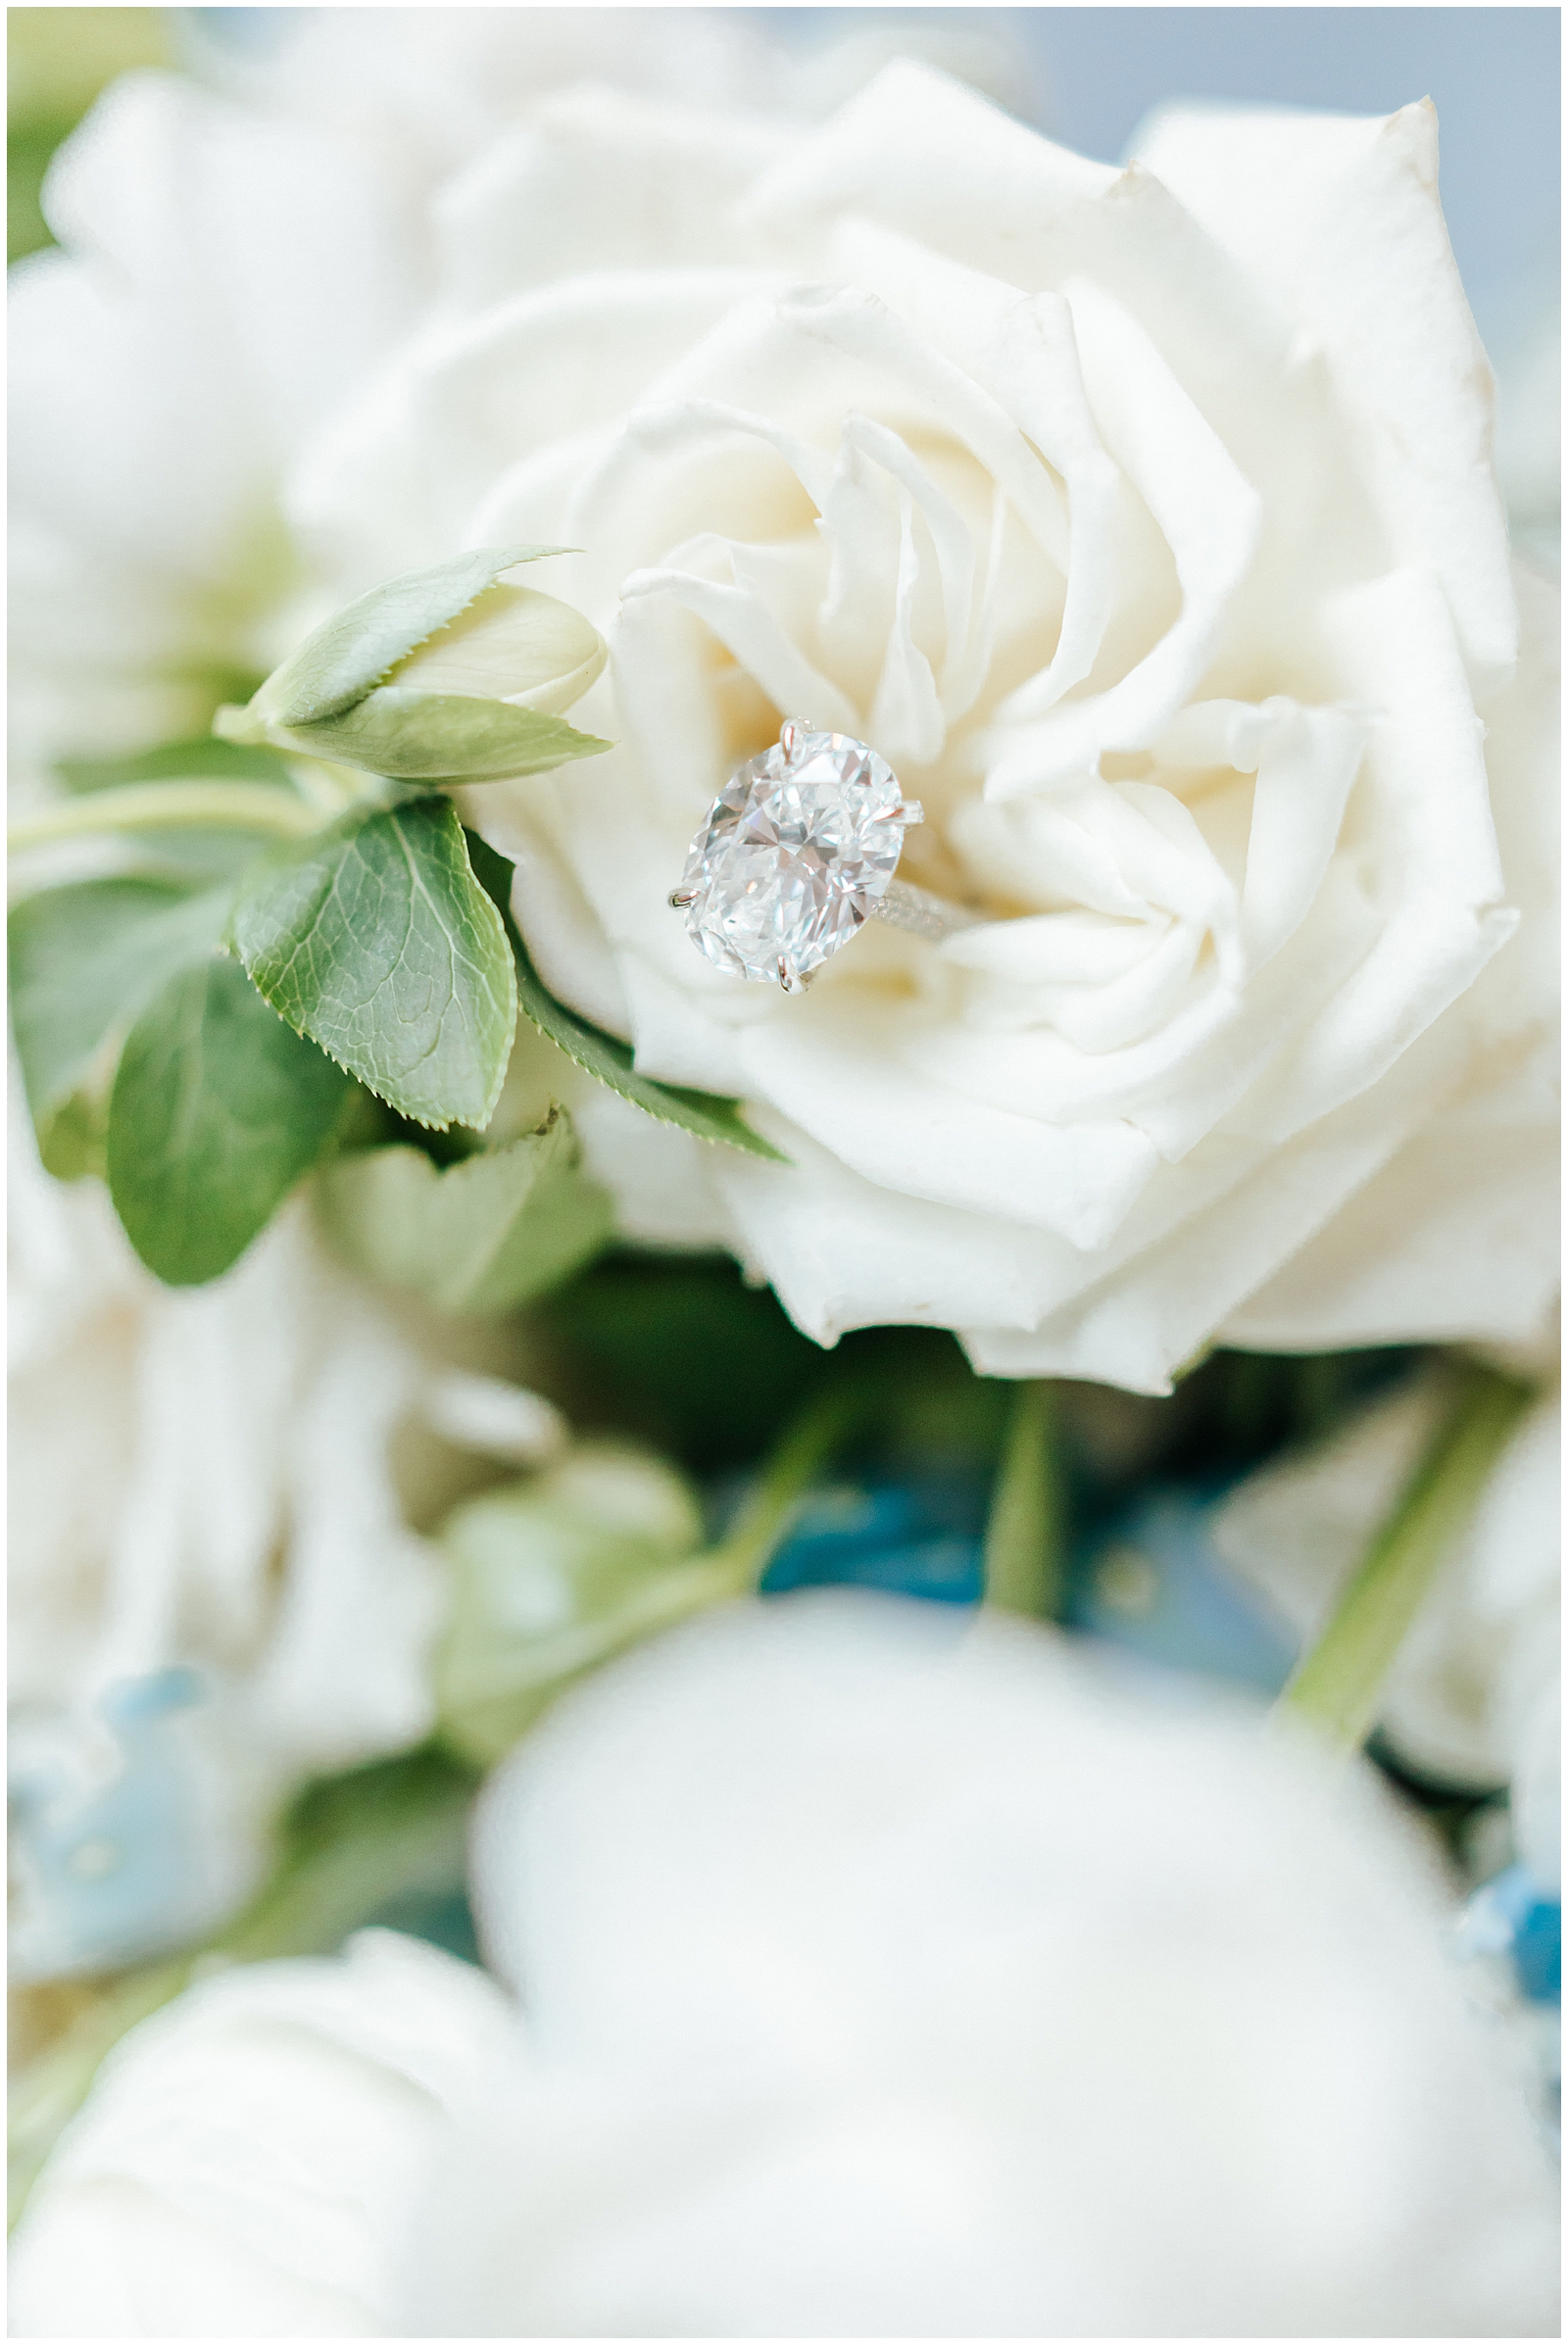 10 carat engagement ring macro photo in white rose